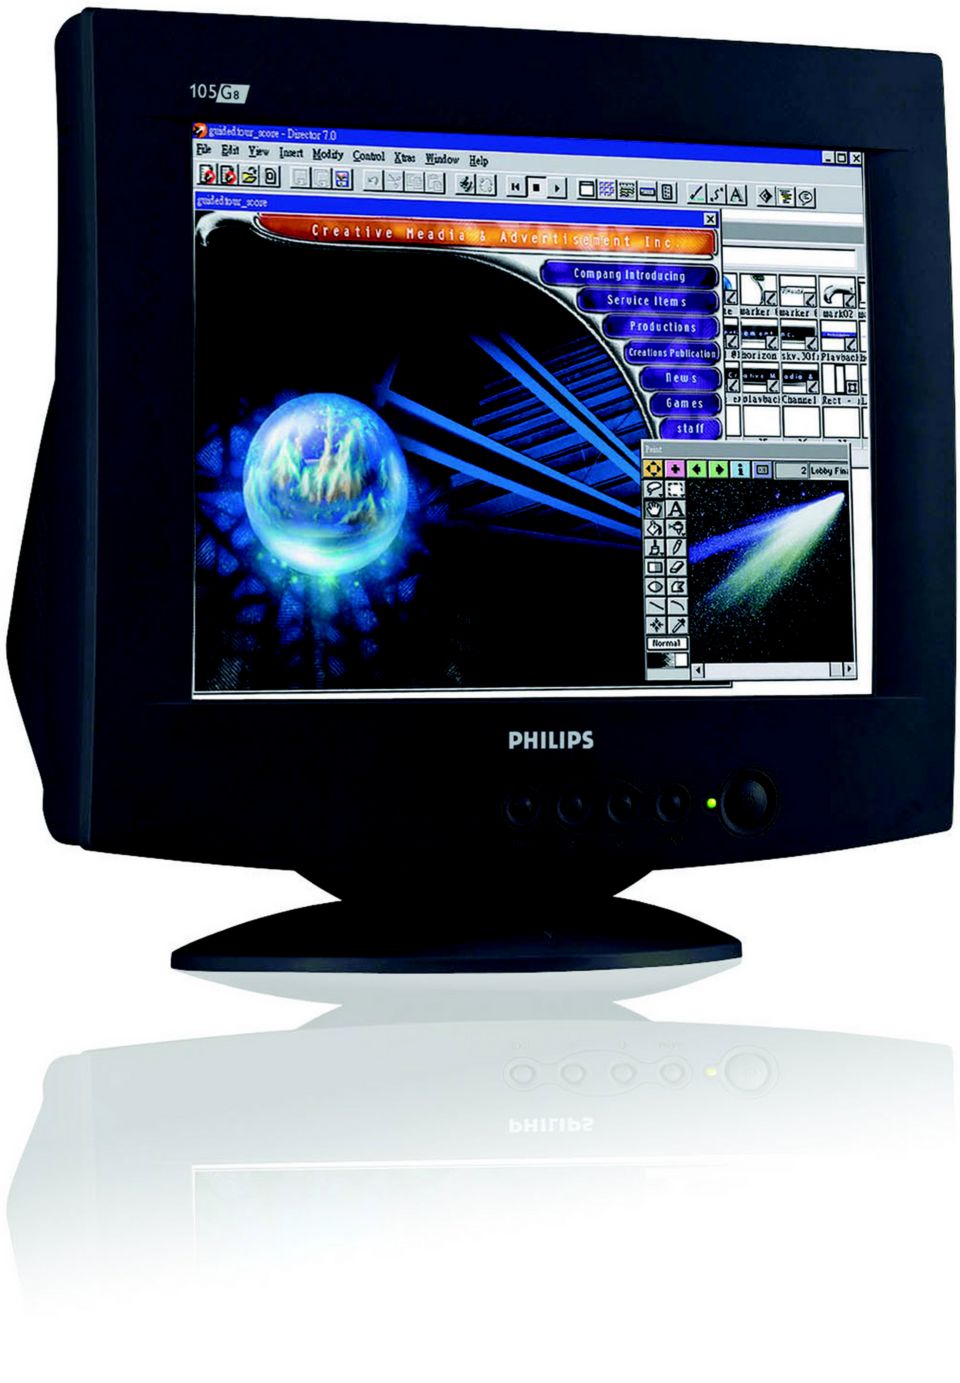 Crt Monitor 105g78 05 Philips